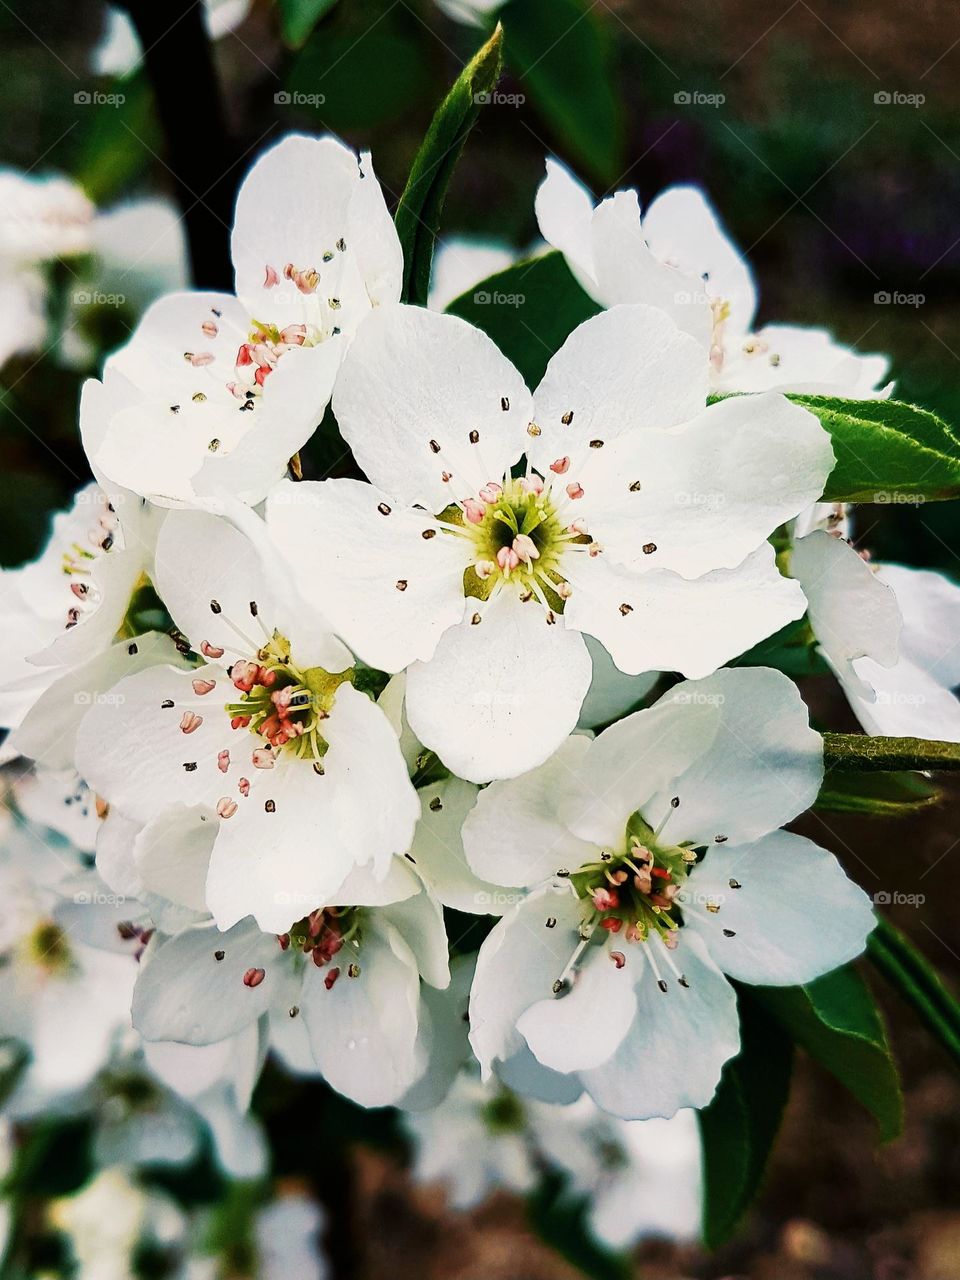 white plum blossoms